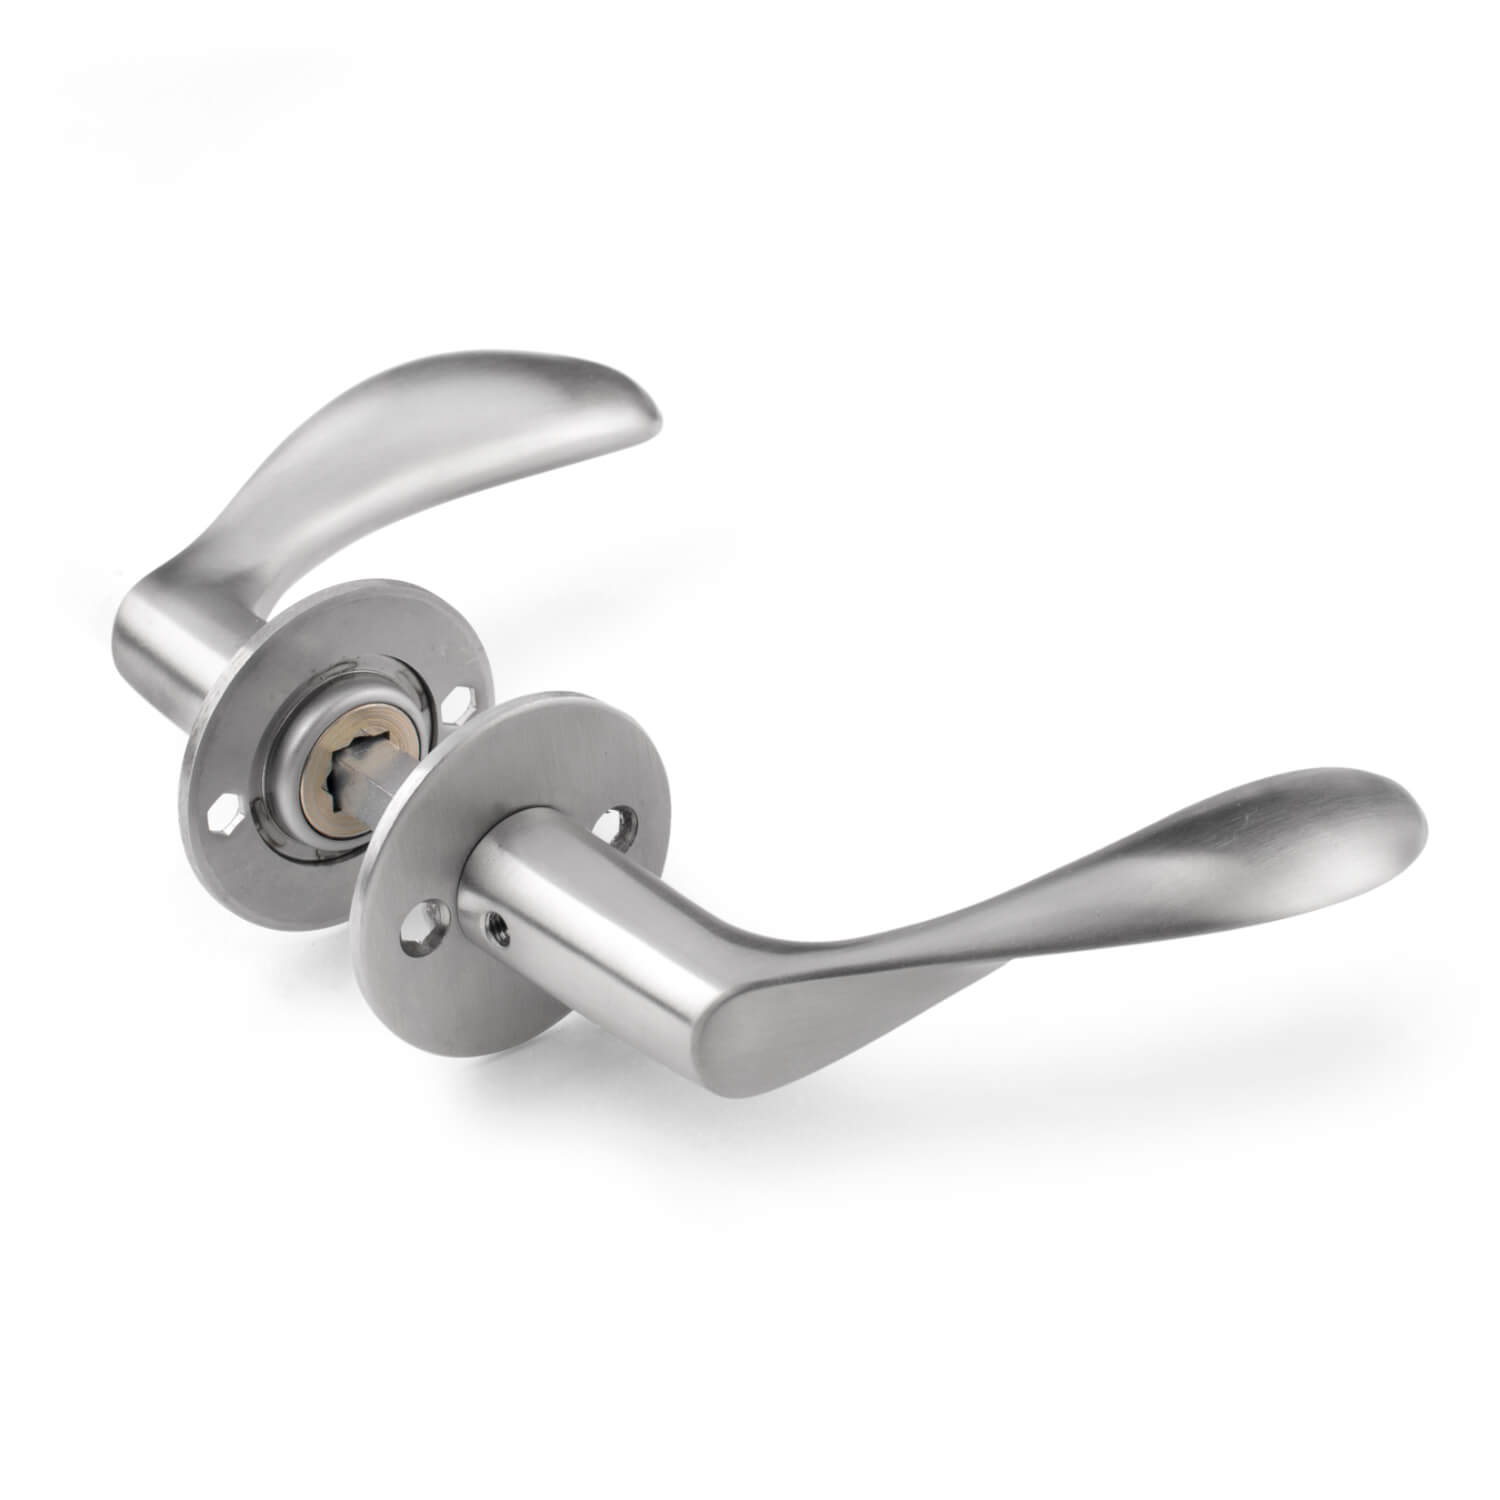 Arne Jacobsen door handle - AJ handle - Brushed steel - Small model - Arne  Jacobsen door handles - VillaHus